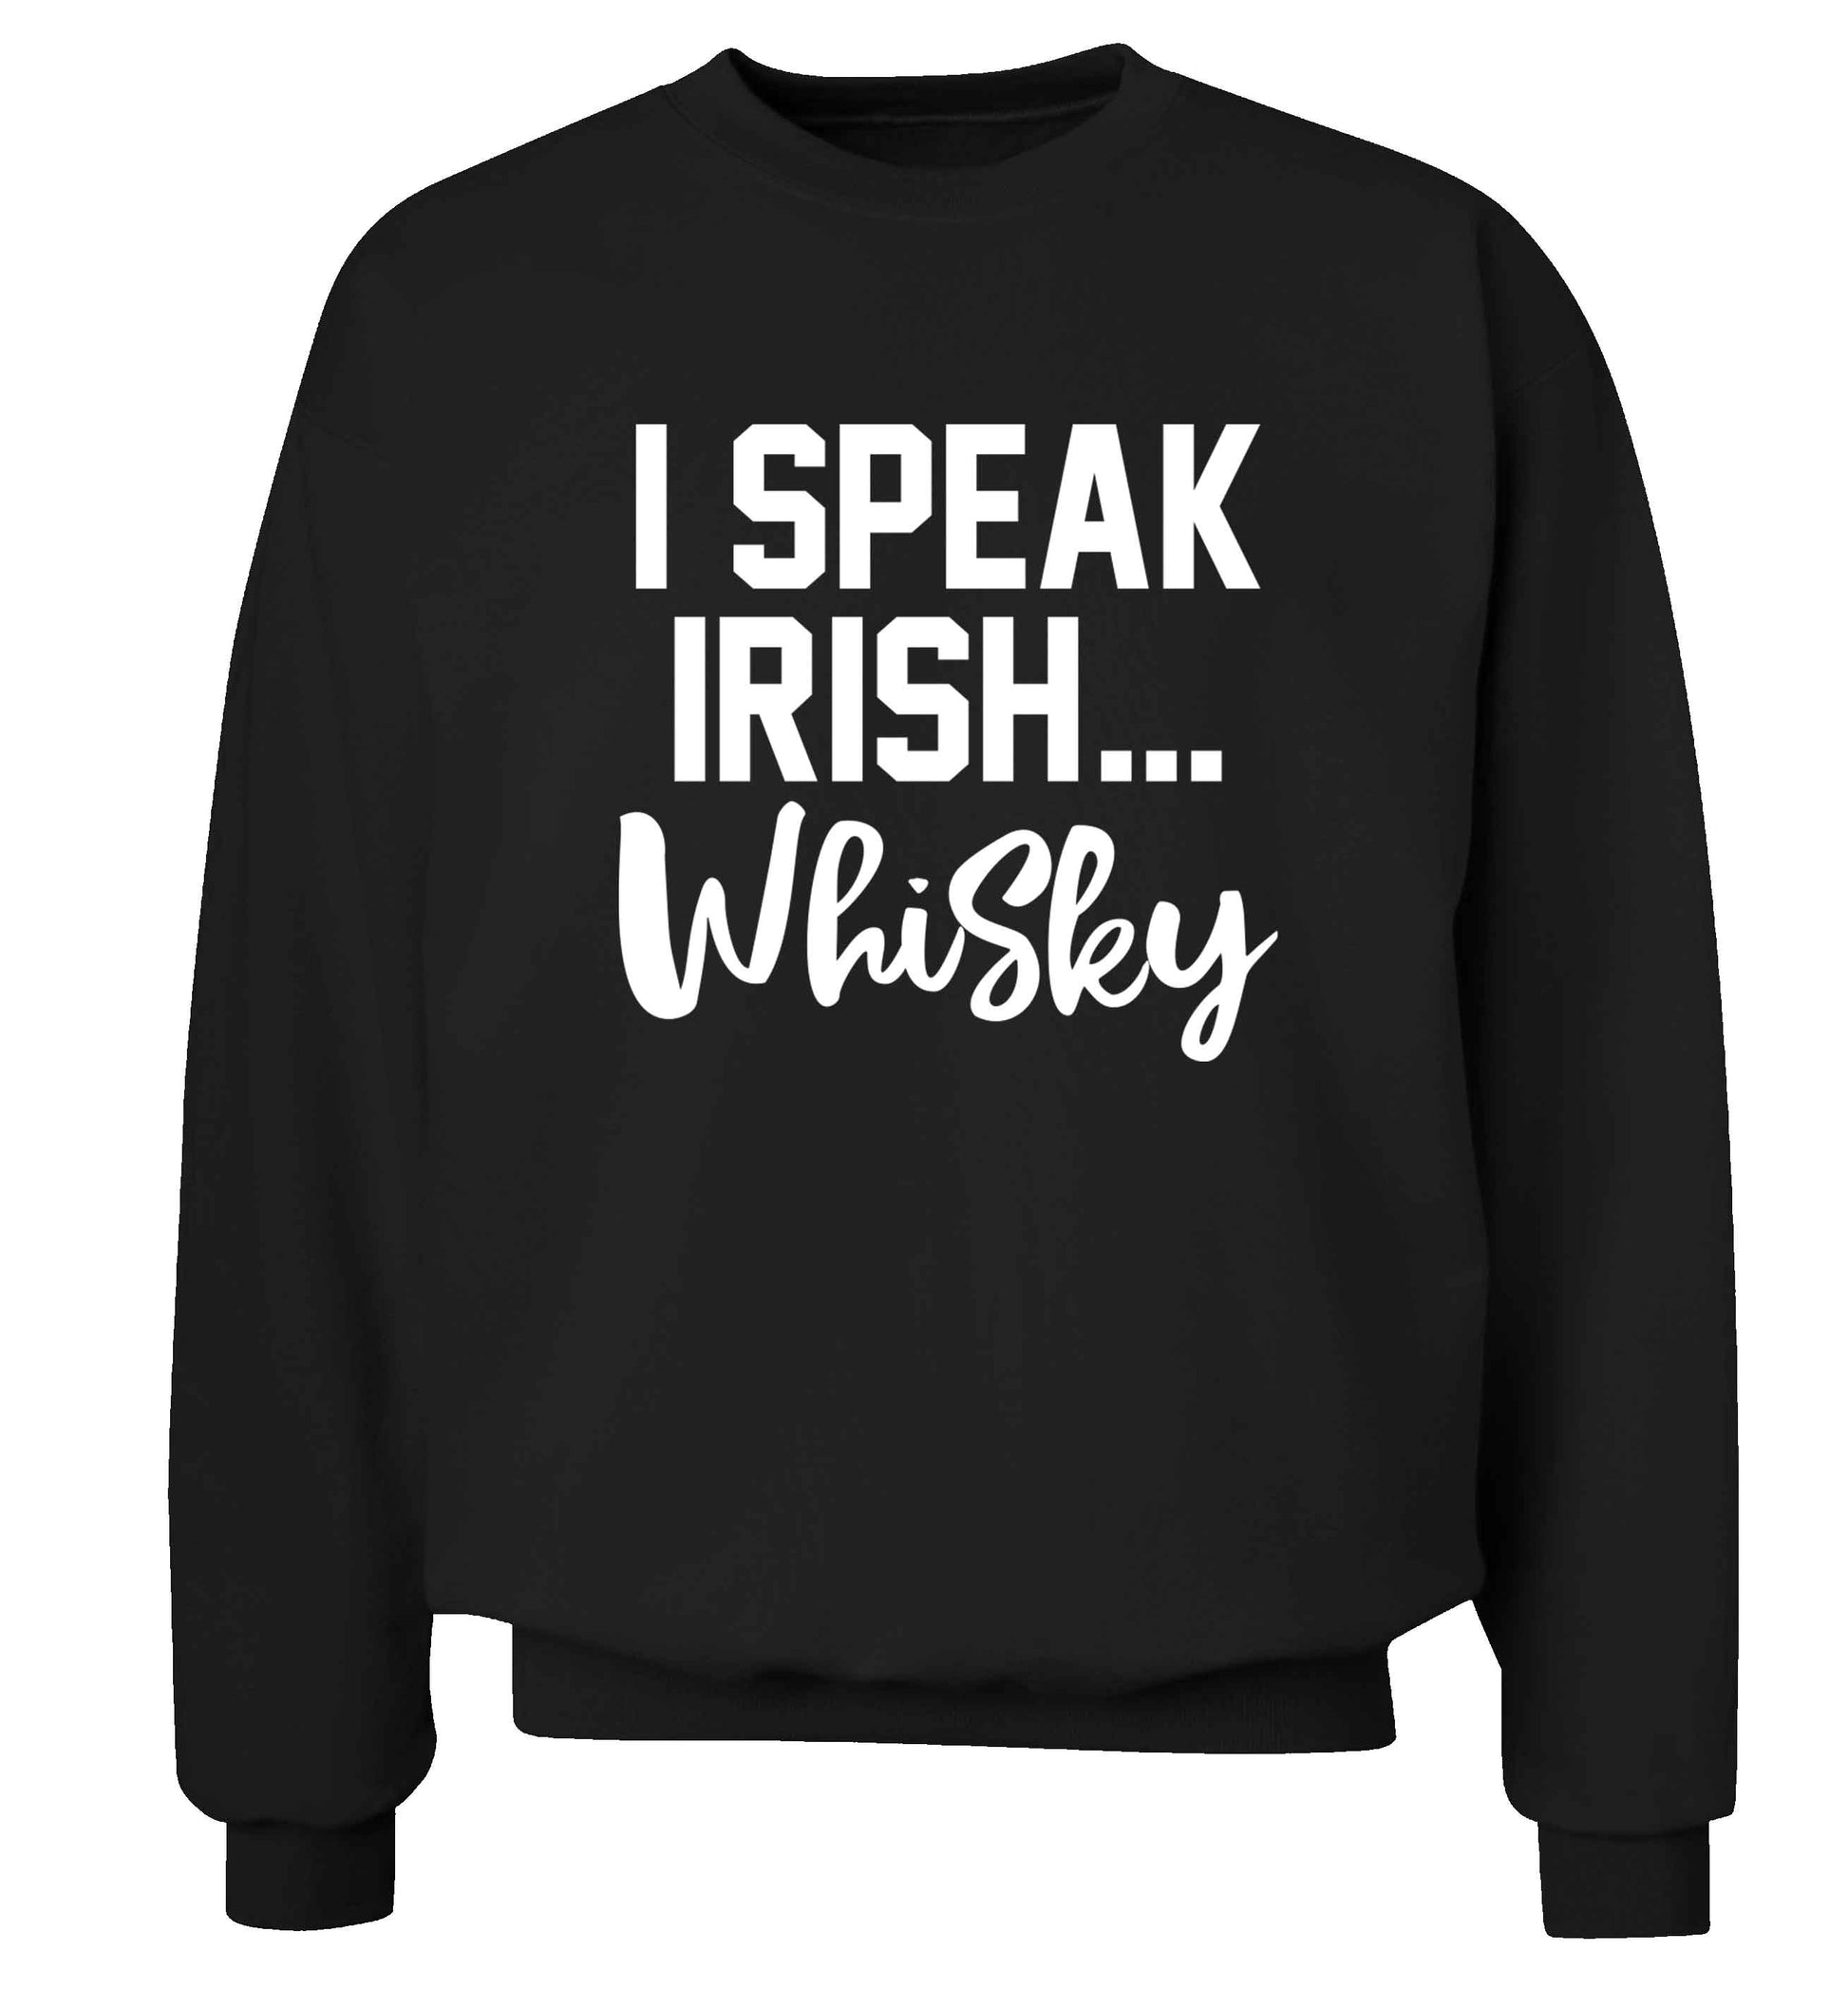 I speak Irish whisky adult's unisex black sweater 2XL